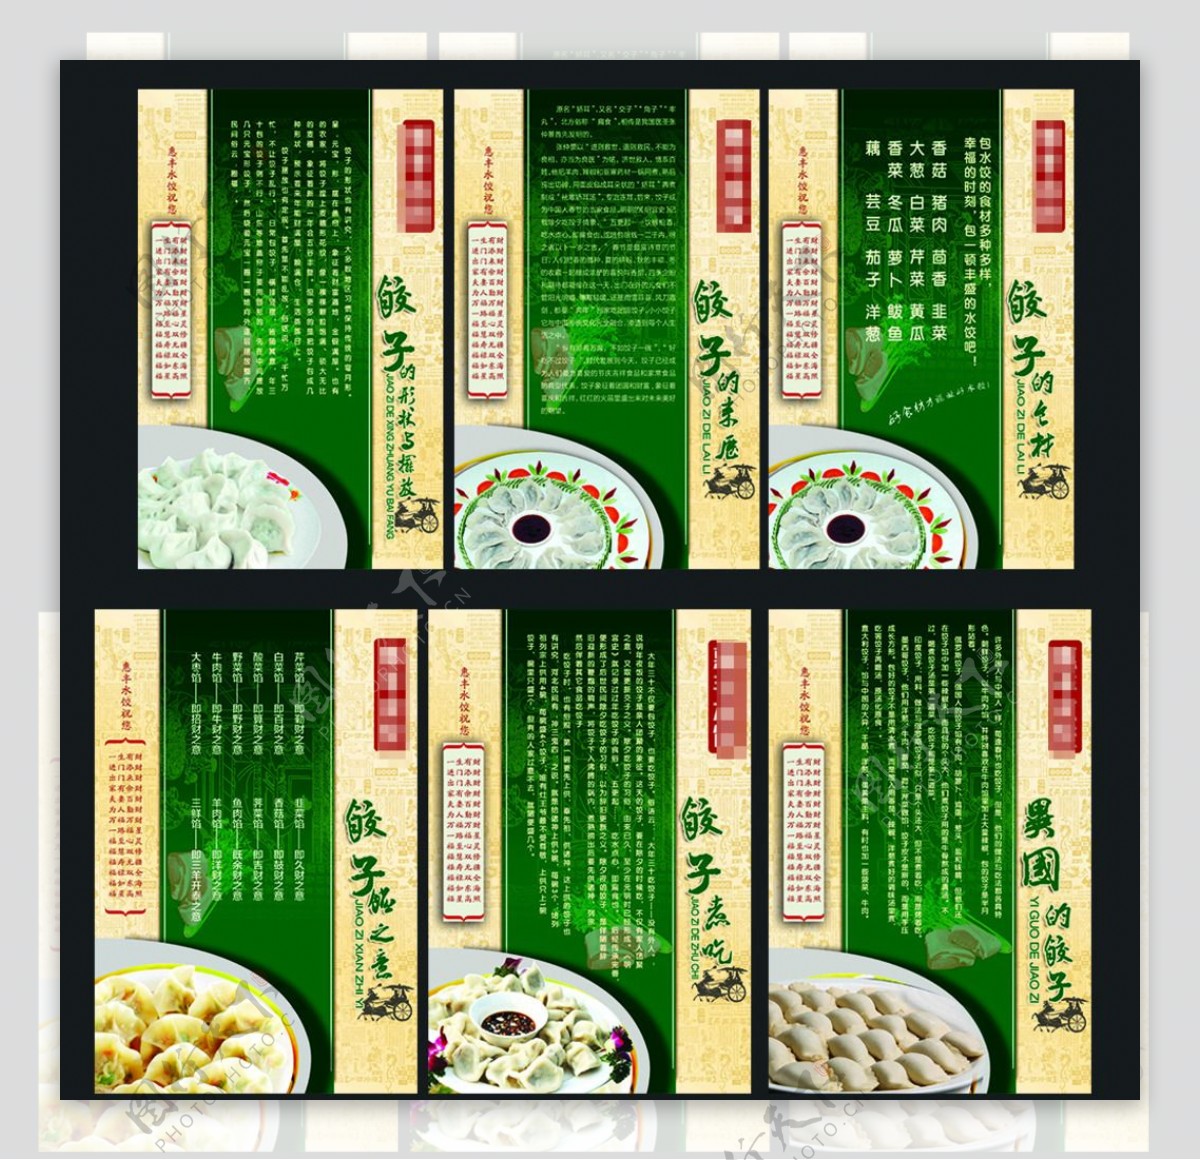 水饺展板图片